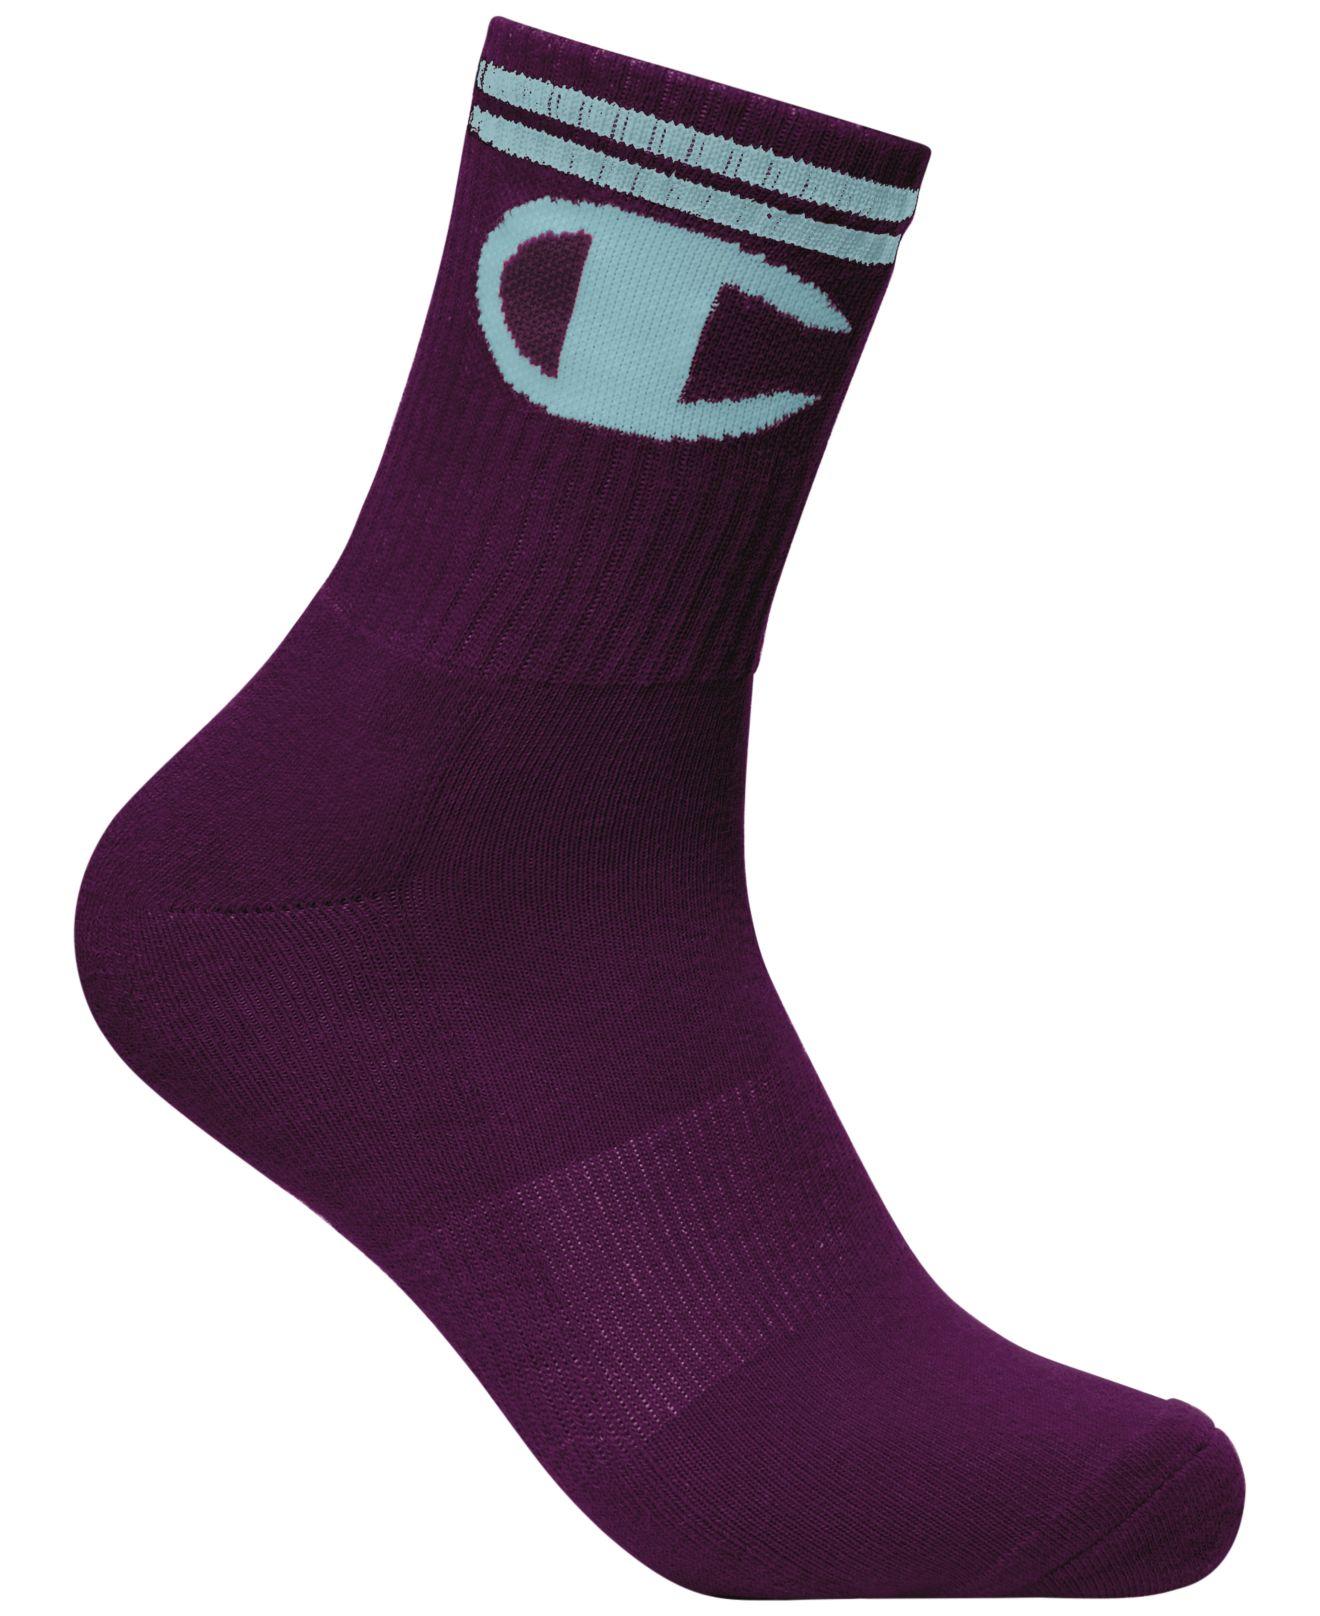 purple champion socks